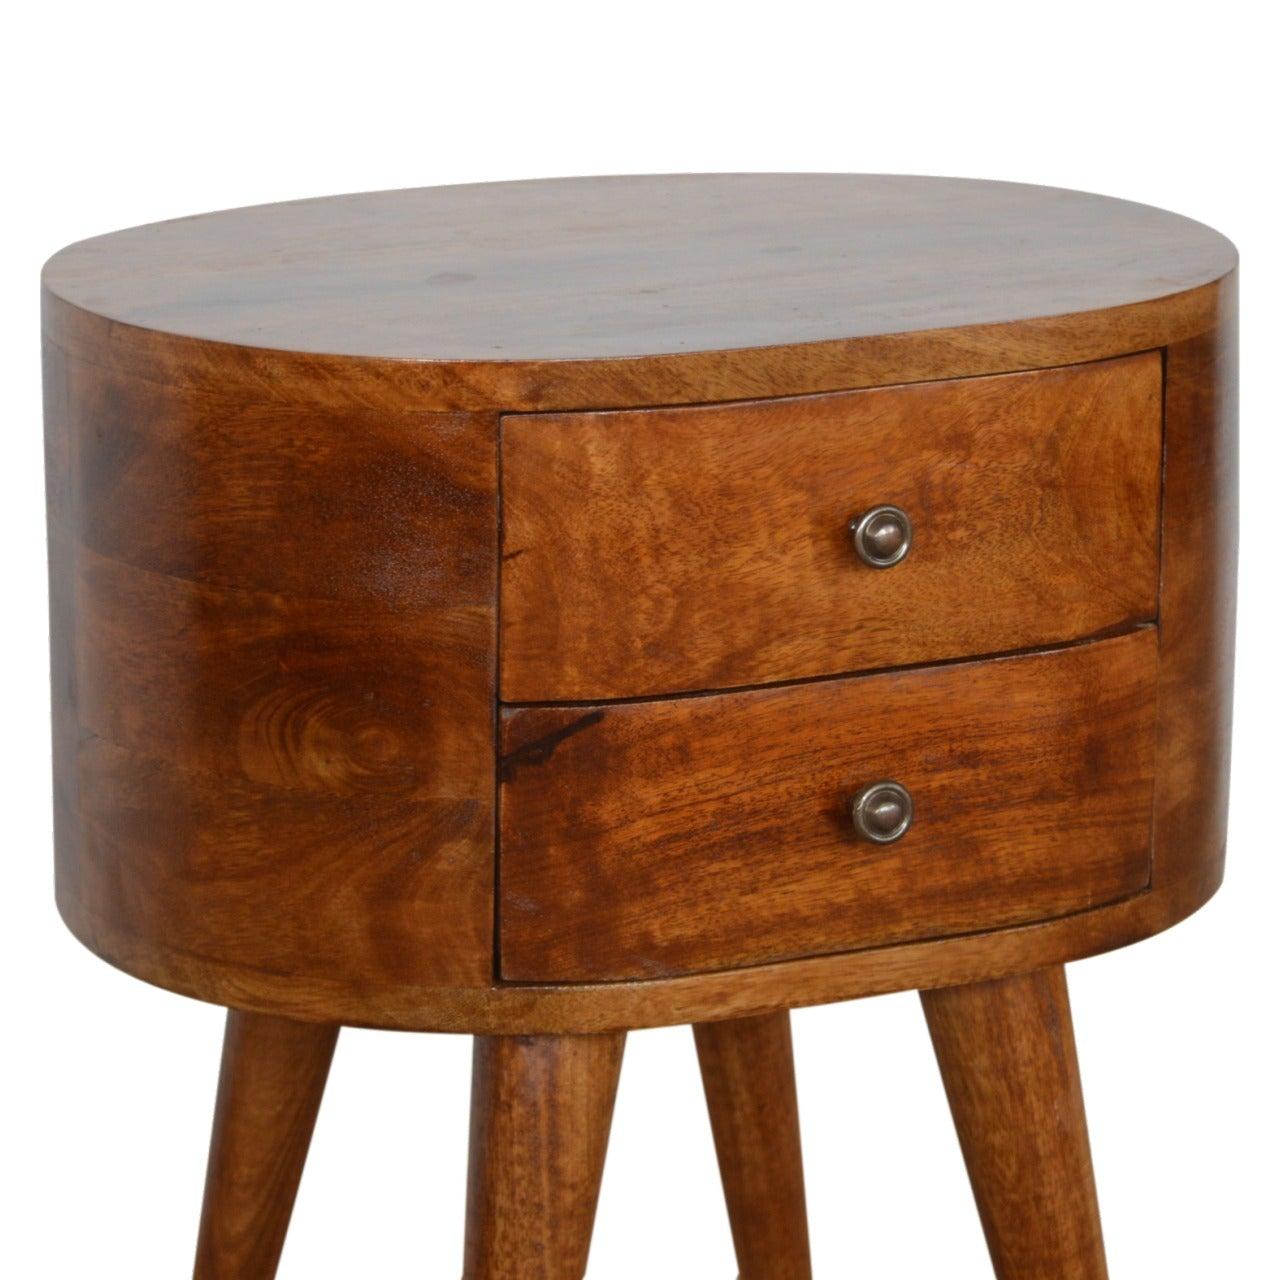 Chestnut rounded bedside table - crimblefest furniture - image 3